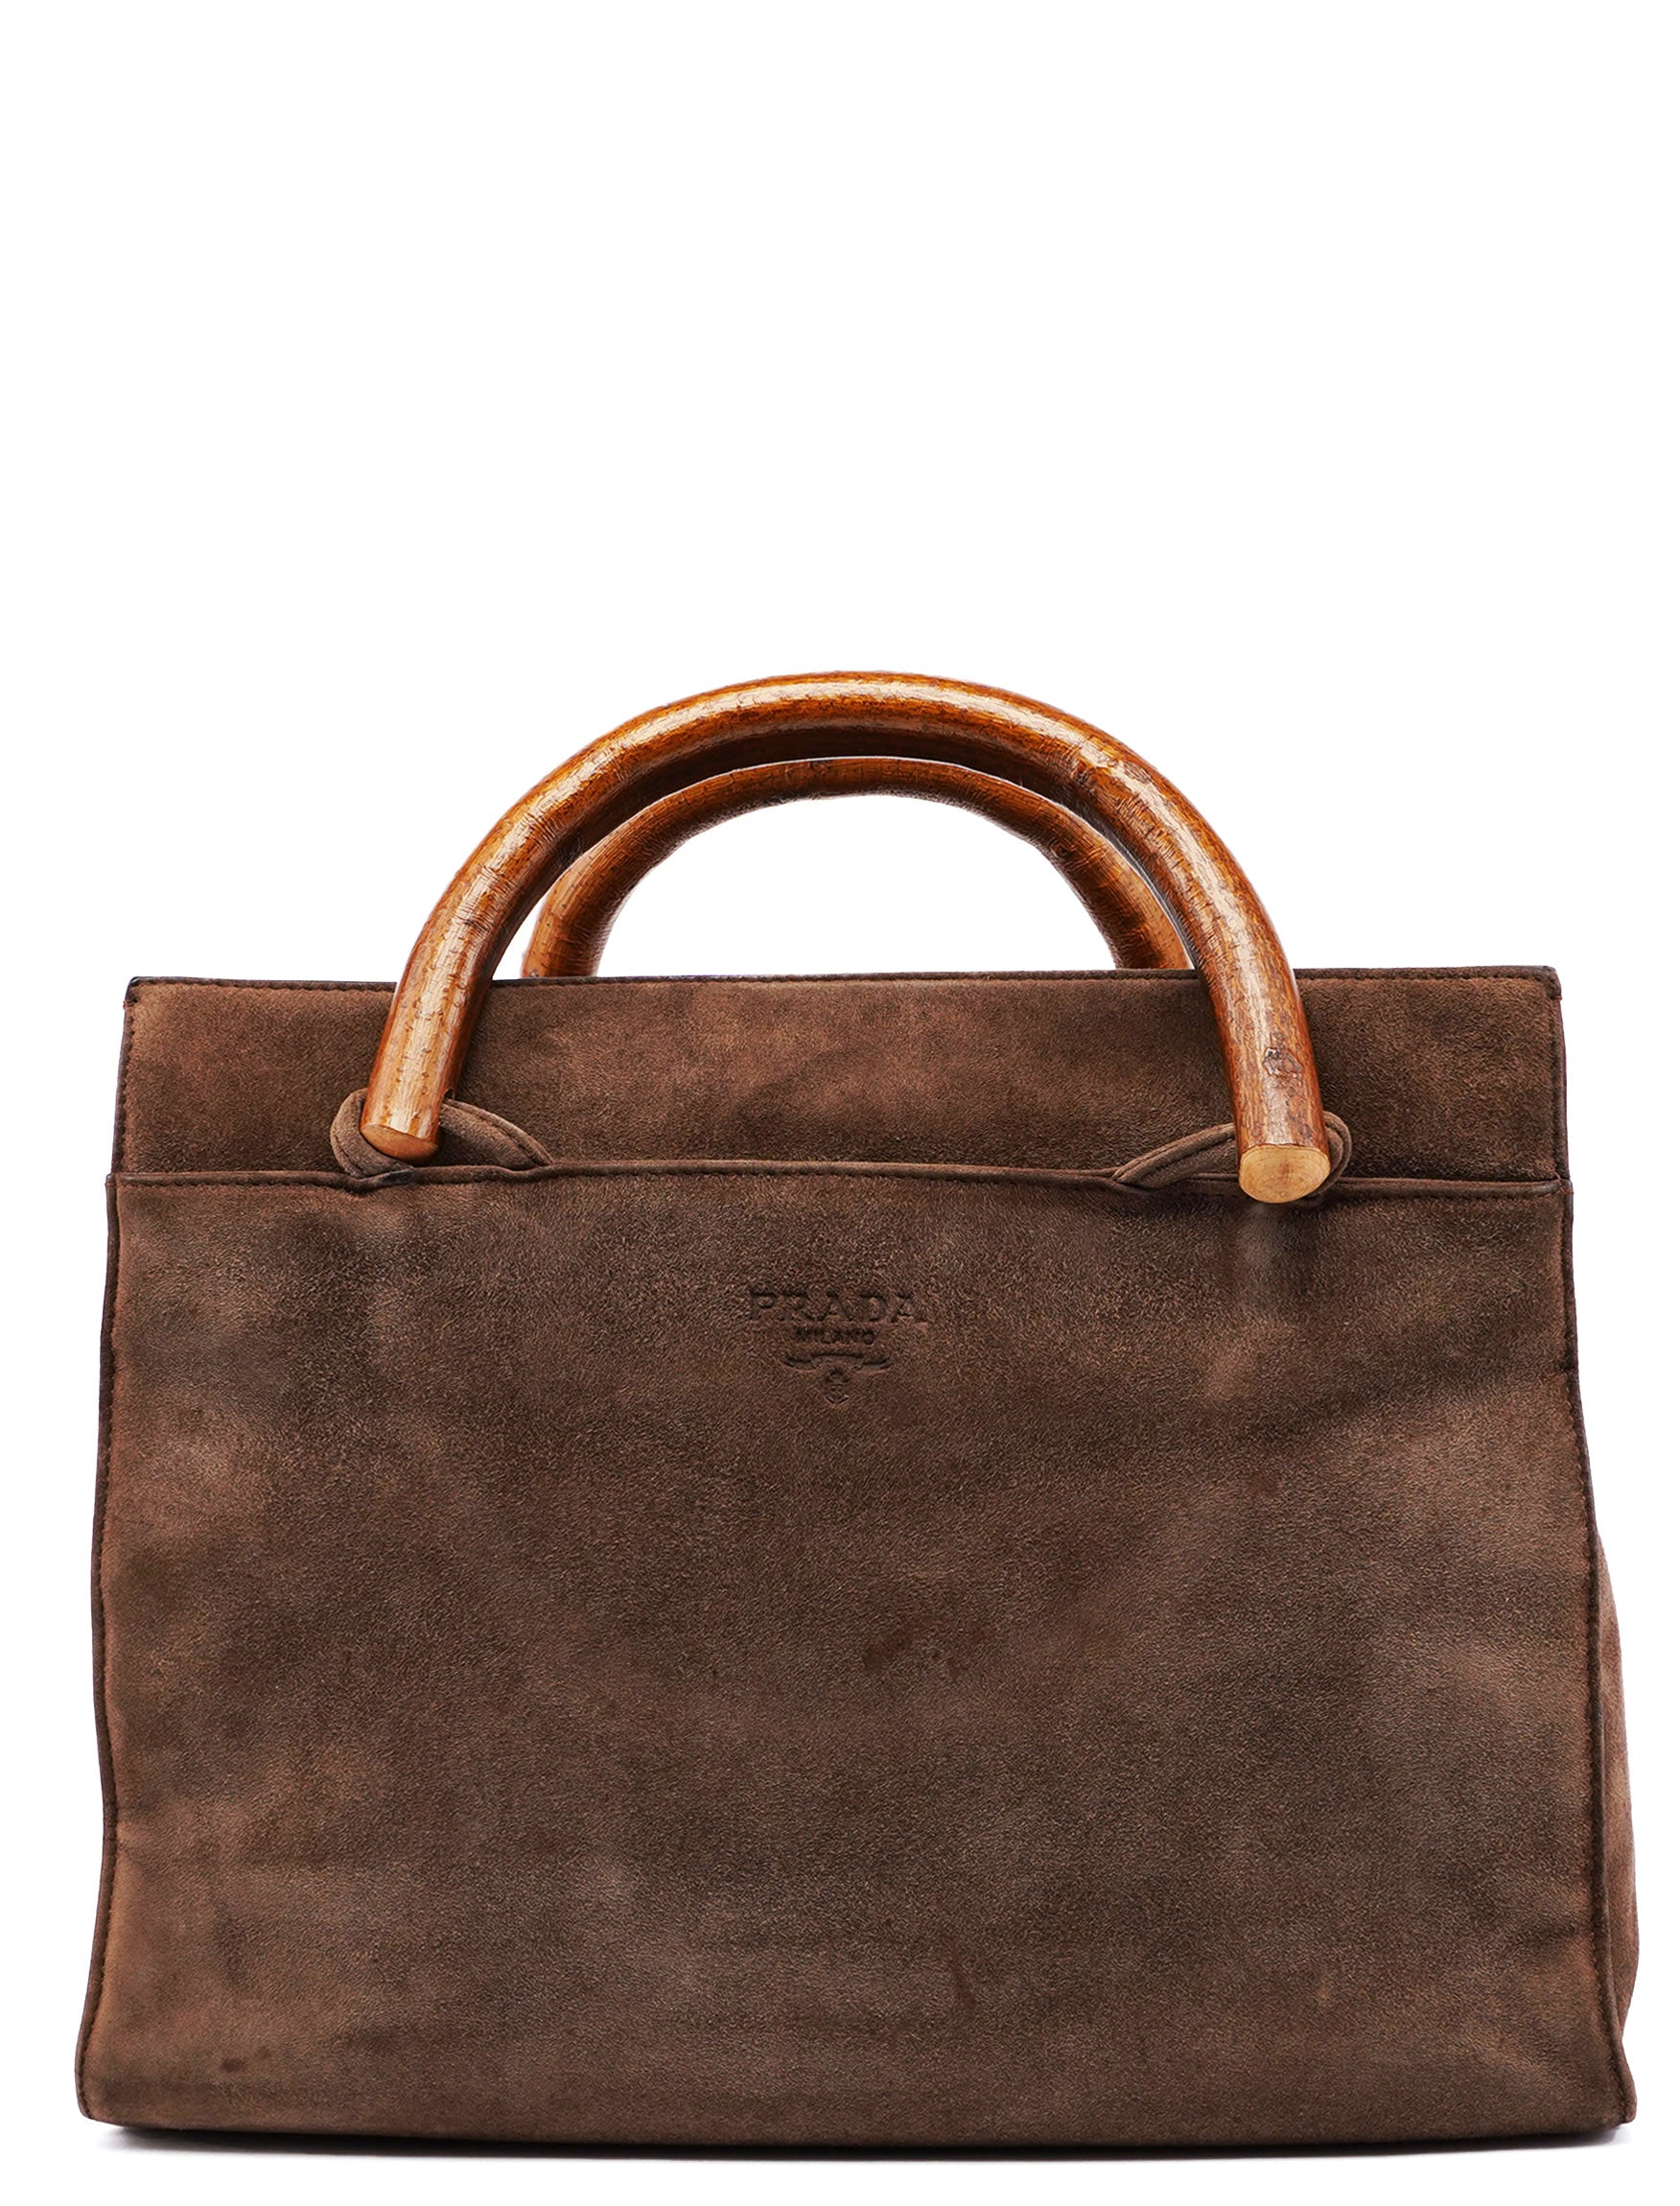 Prada 1990's Suede Wood Handle Bag